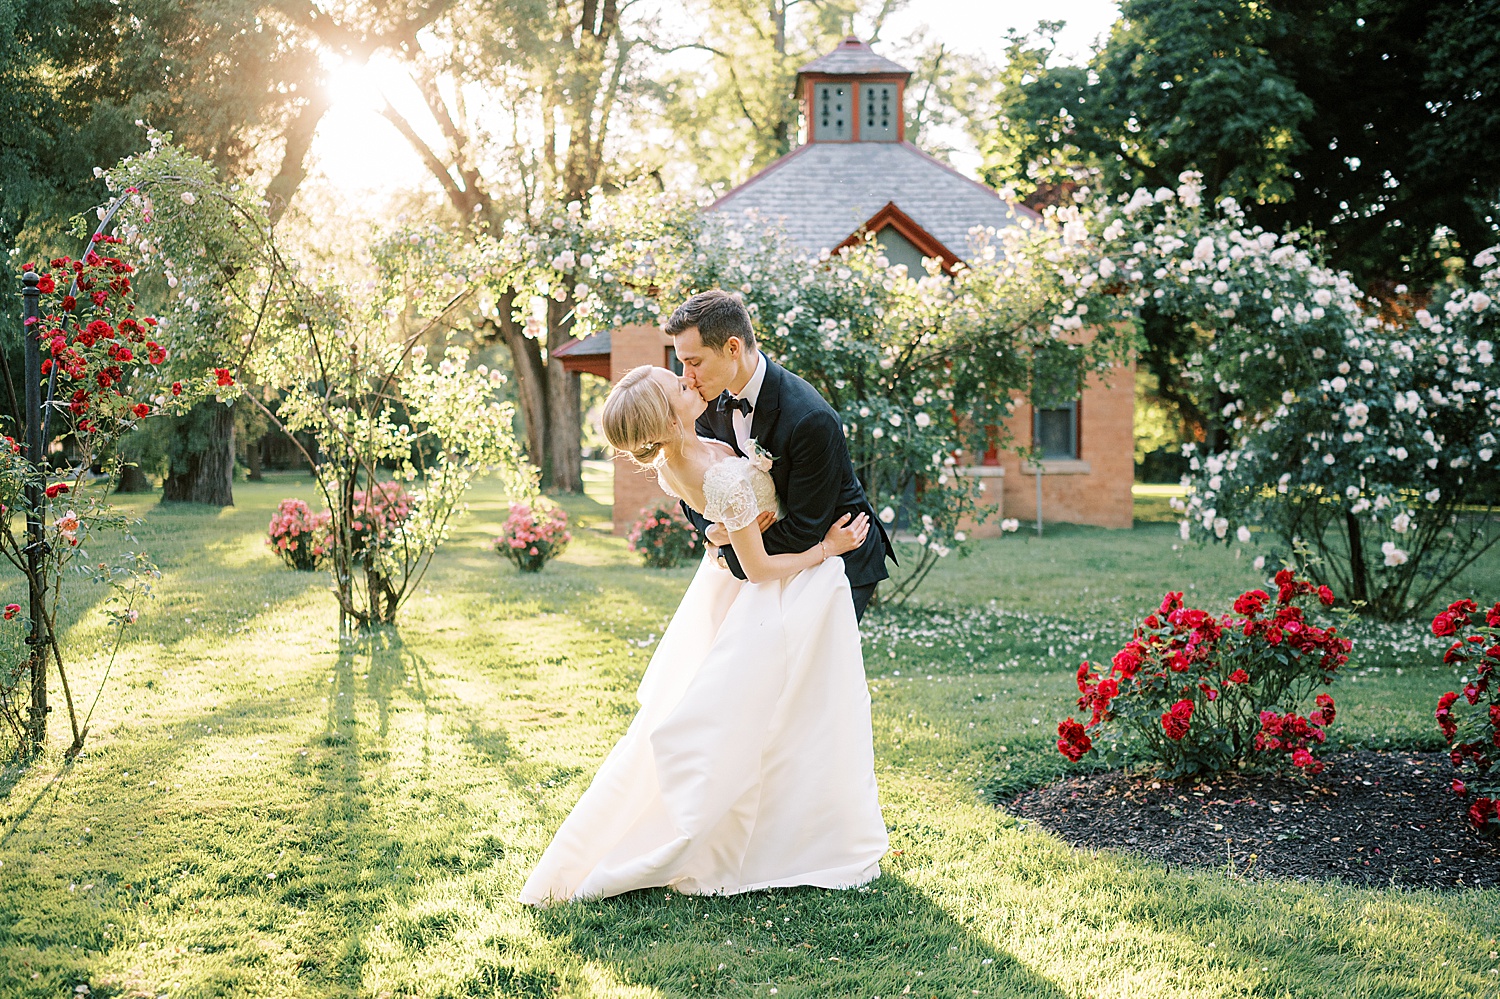 groom dips bride kissing her in rose garden at Glen Foerd on the Delaware